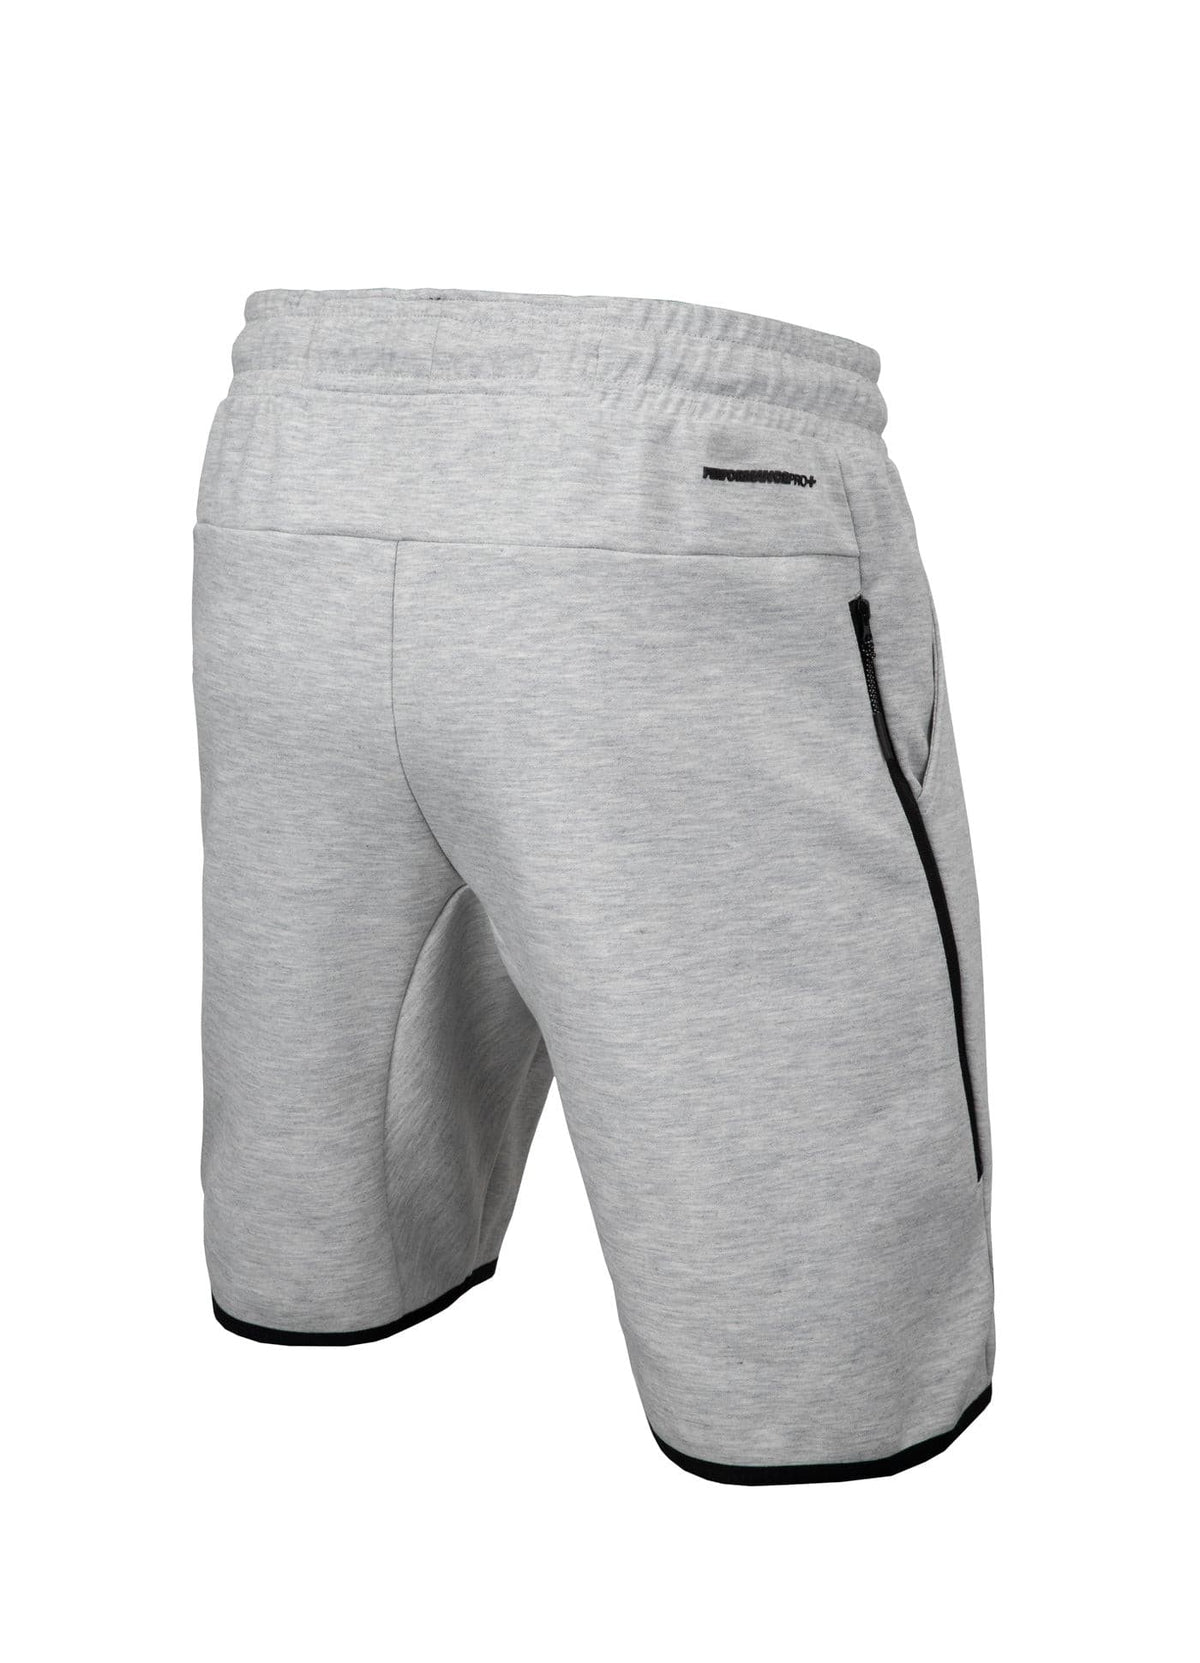 ALCORN Grey Shorts.